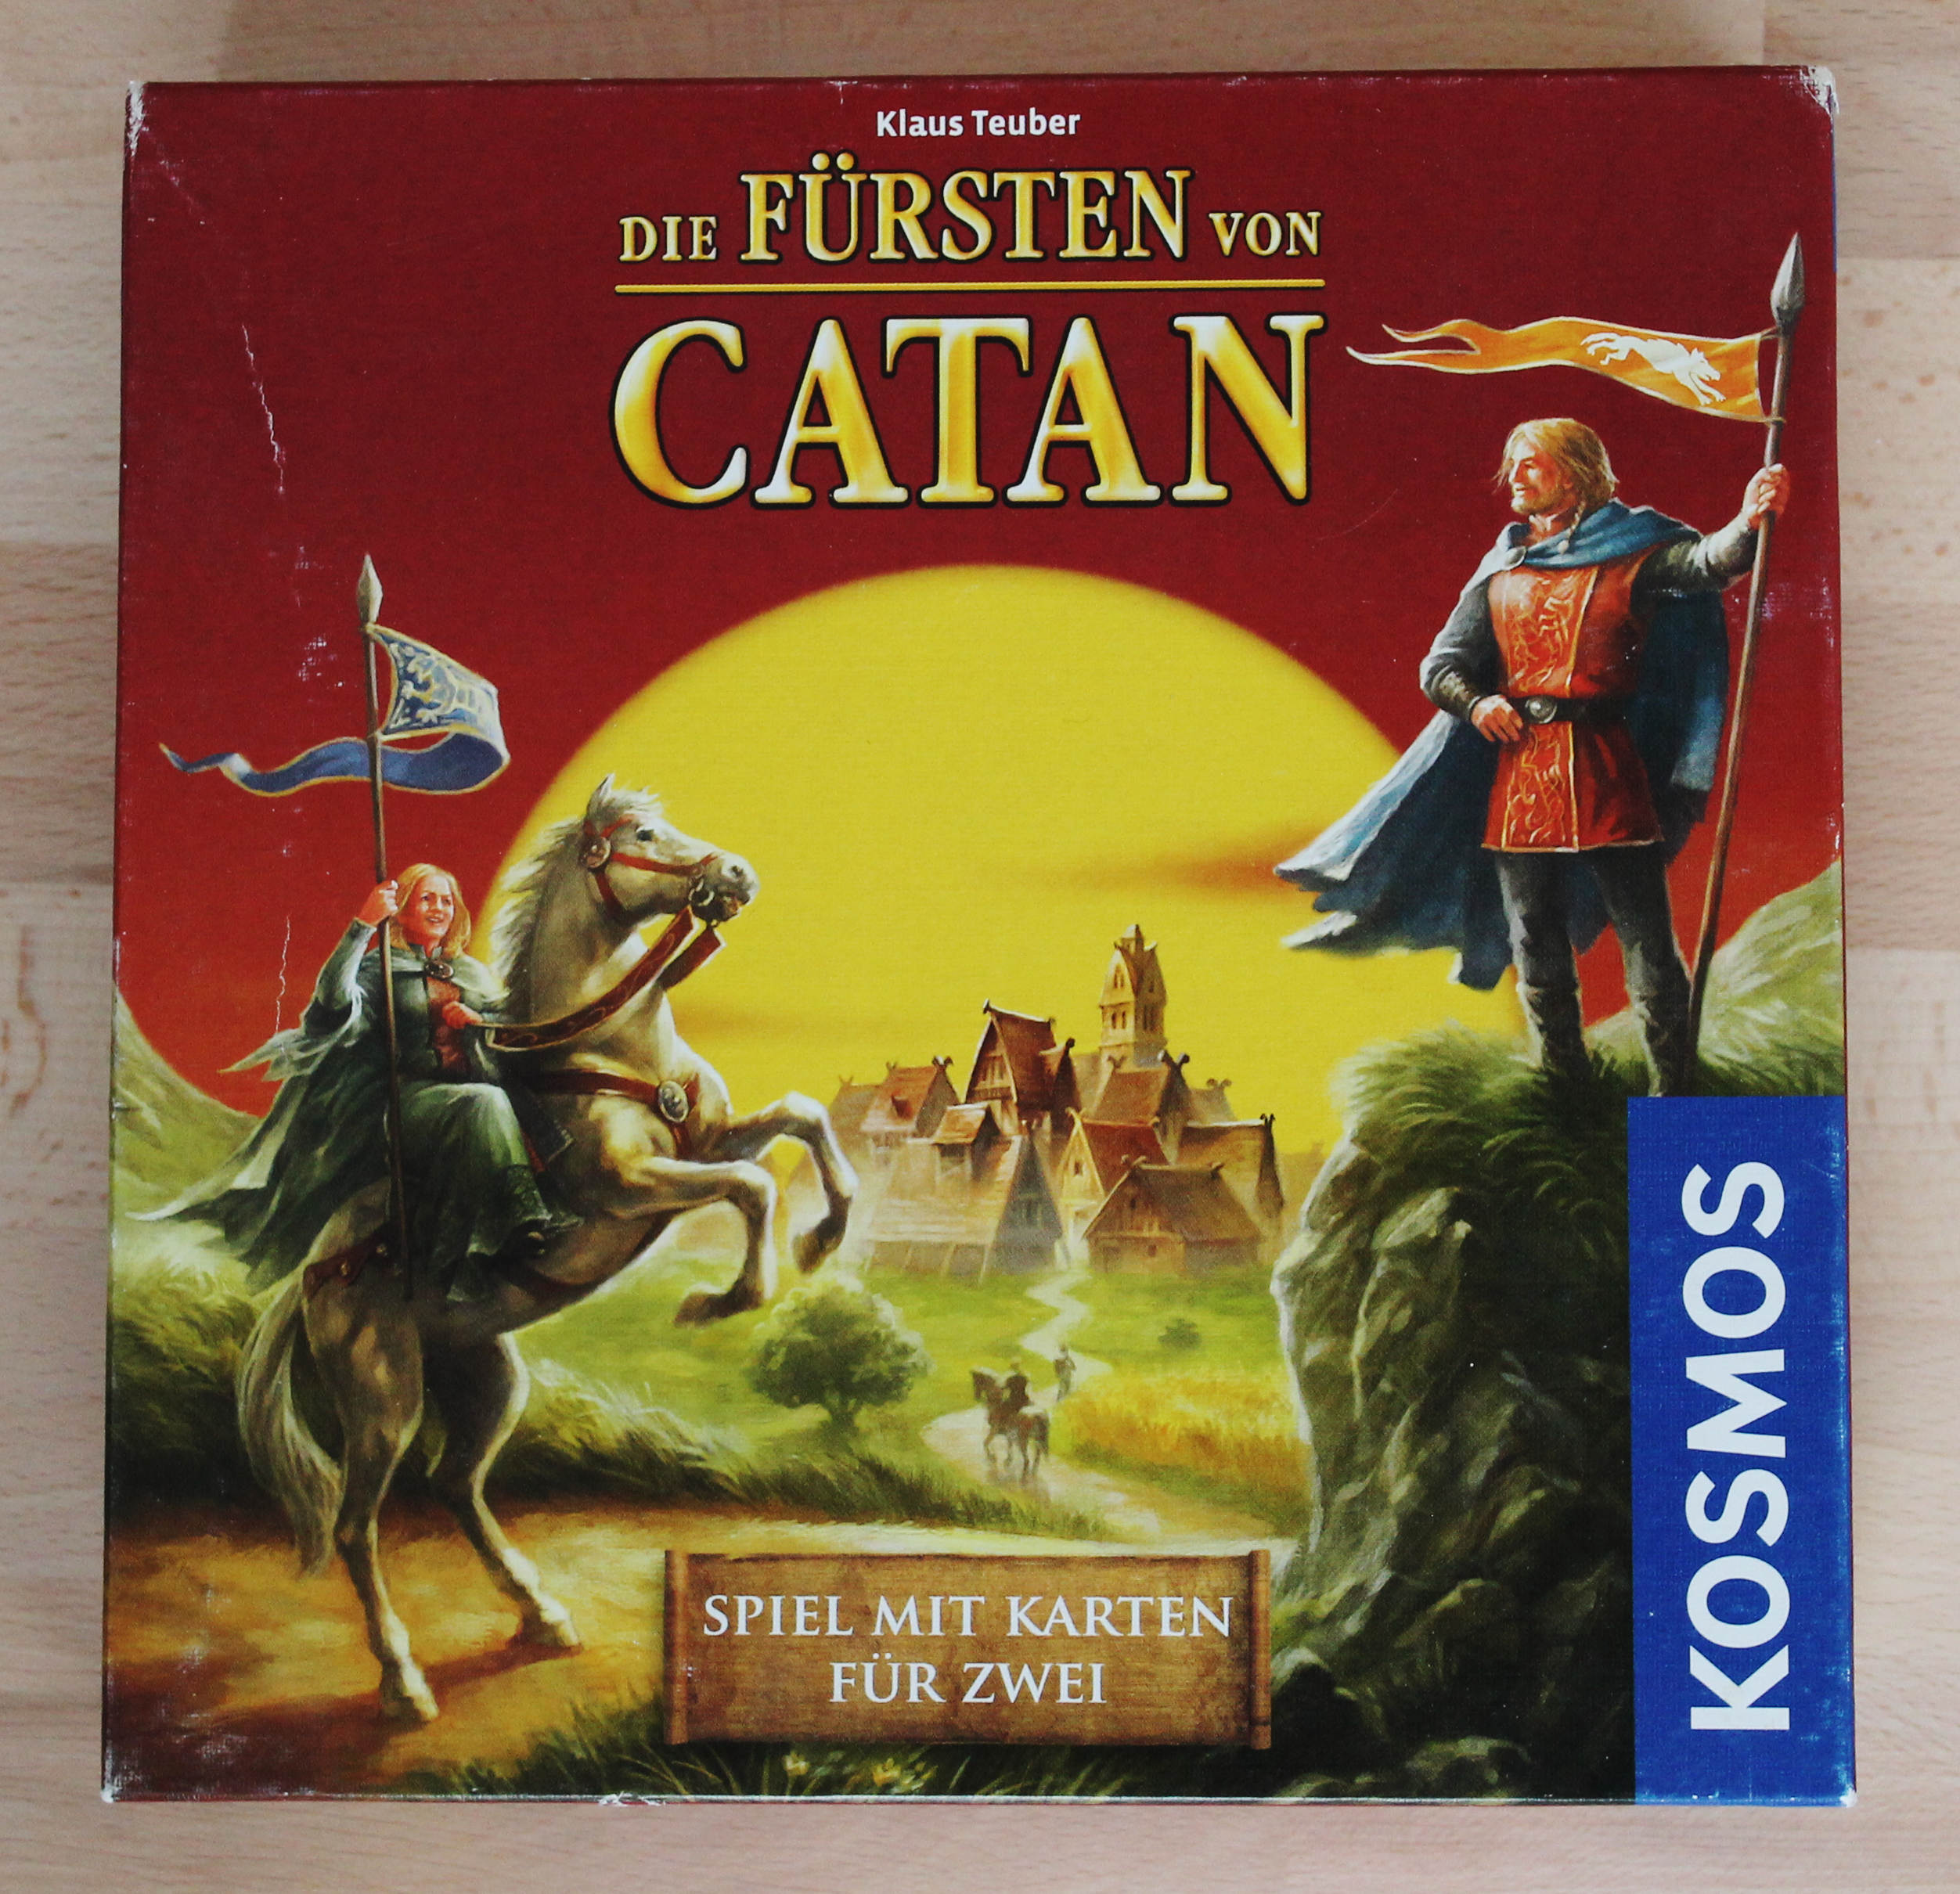 Abb.: Spielschachtel des Kartenspiels Die Fürsten von Catan (2010), einer veränderten Neuauflage des Kartenspiels von 1996. Quelle: Eigene Abb.